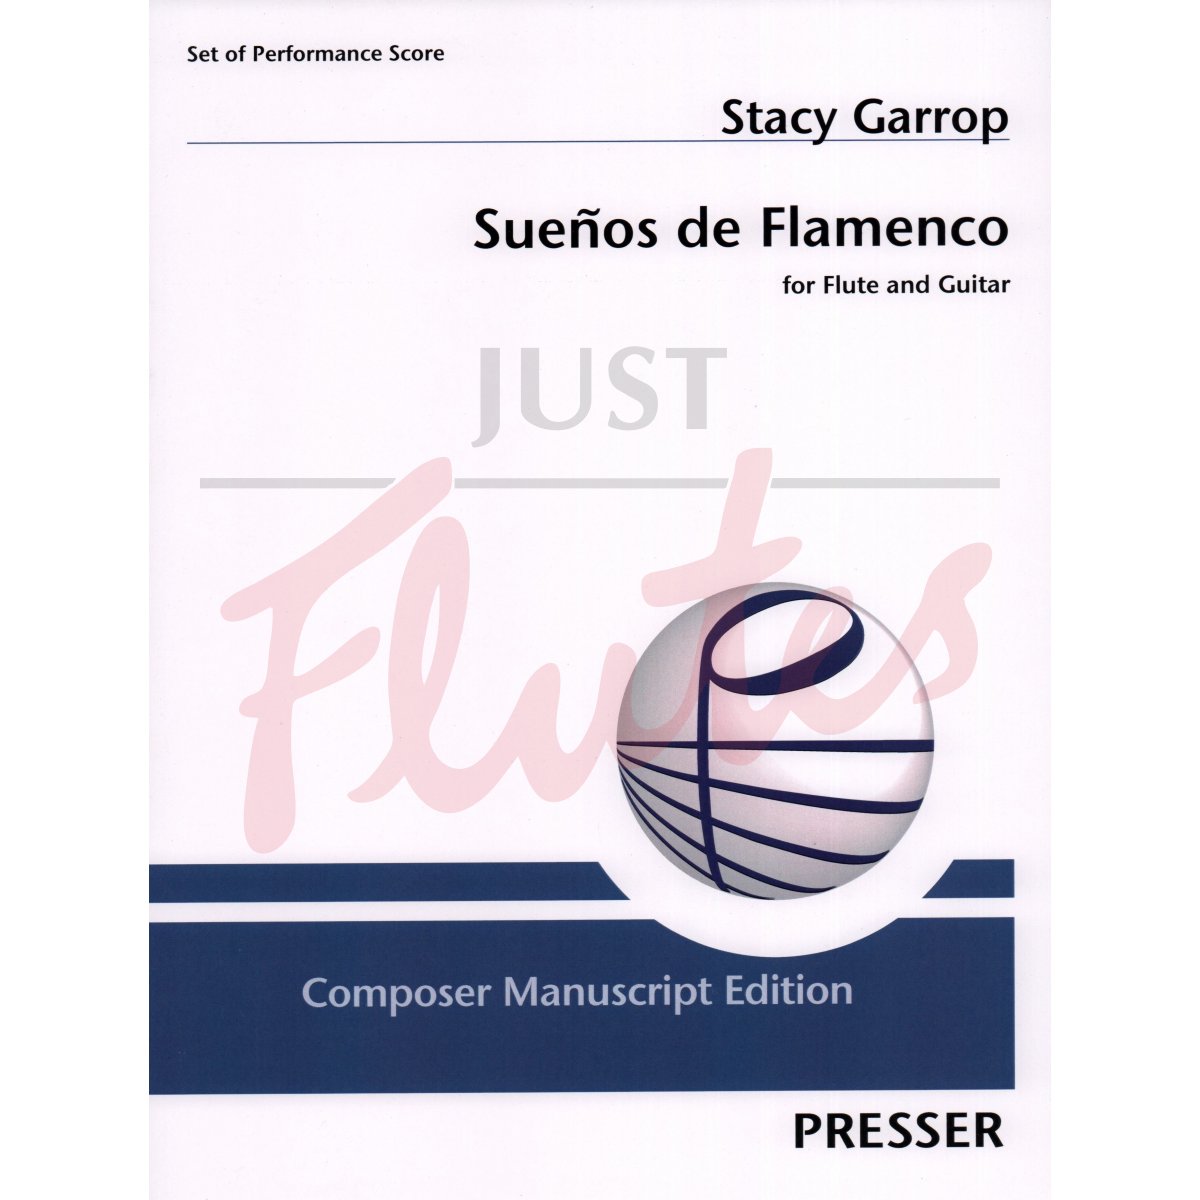 Sueños de Flamenco for Flute and Guitar